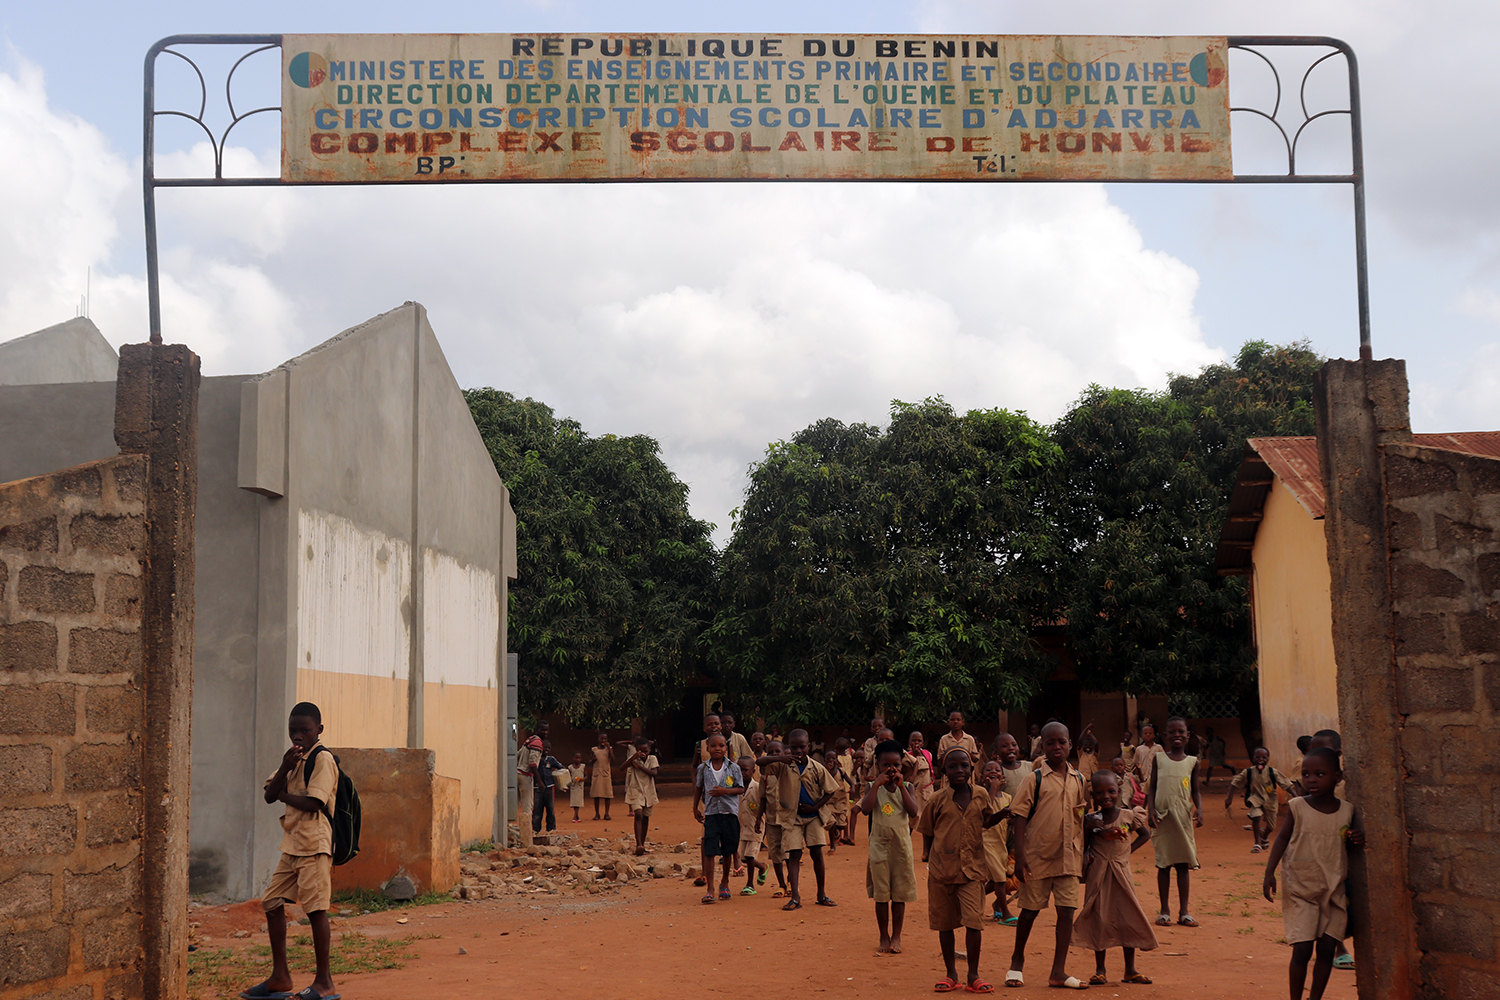 Porte d’entrée à l’école primaire de Honvié, à Porto Novo.